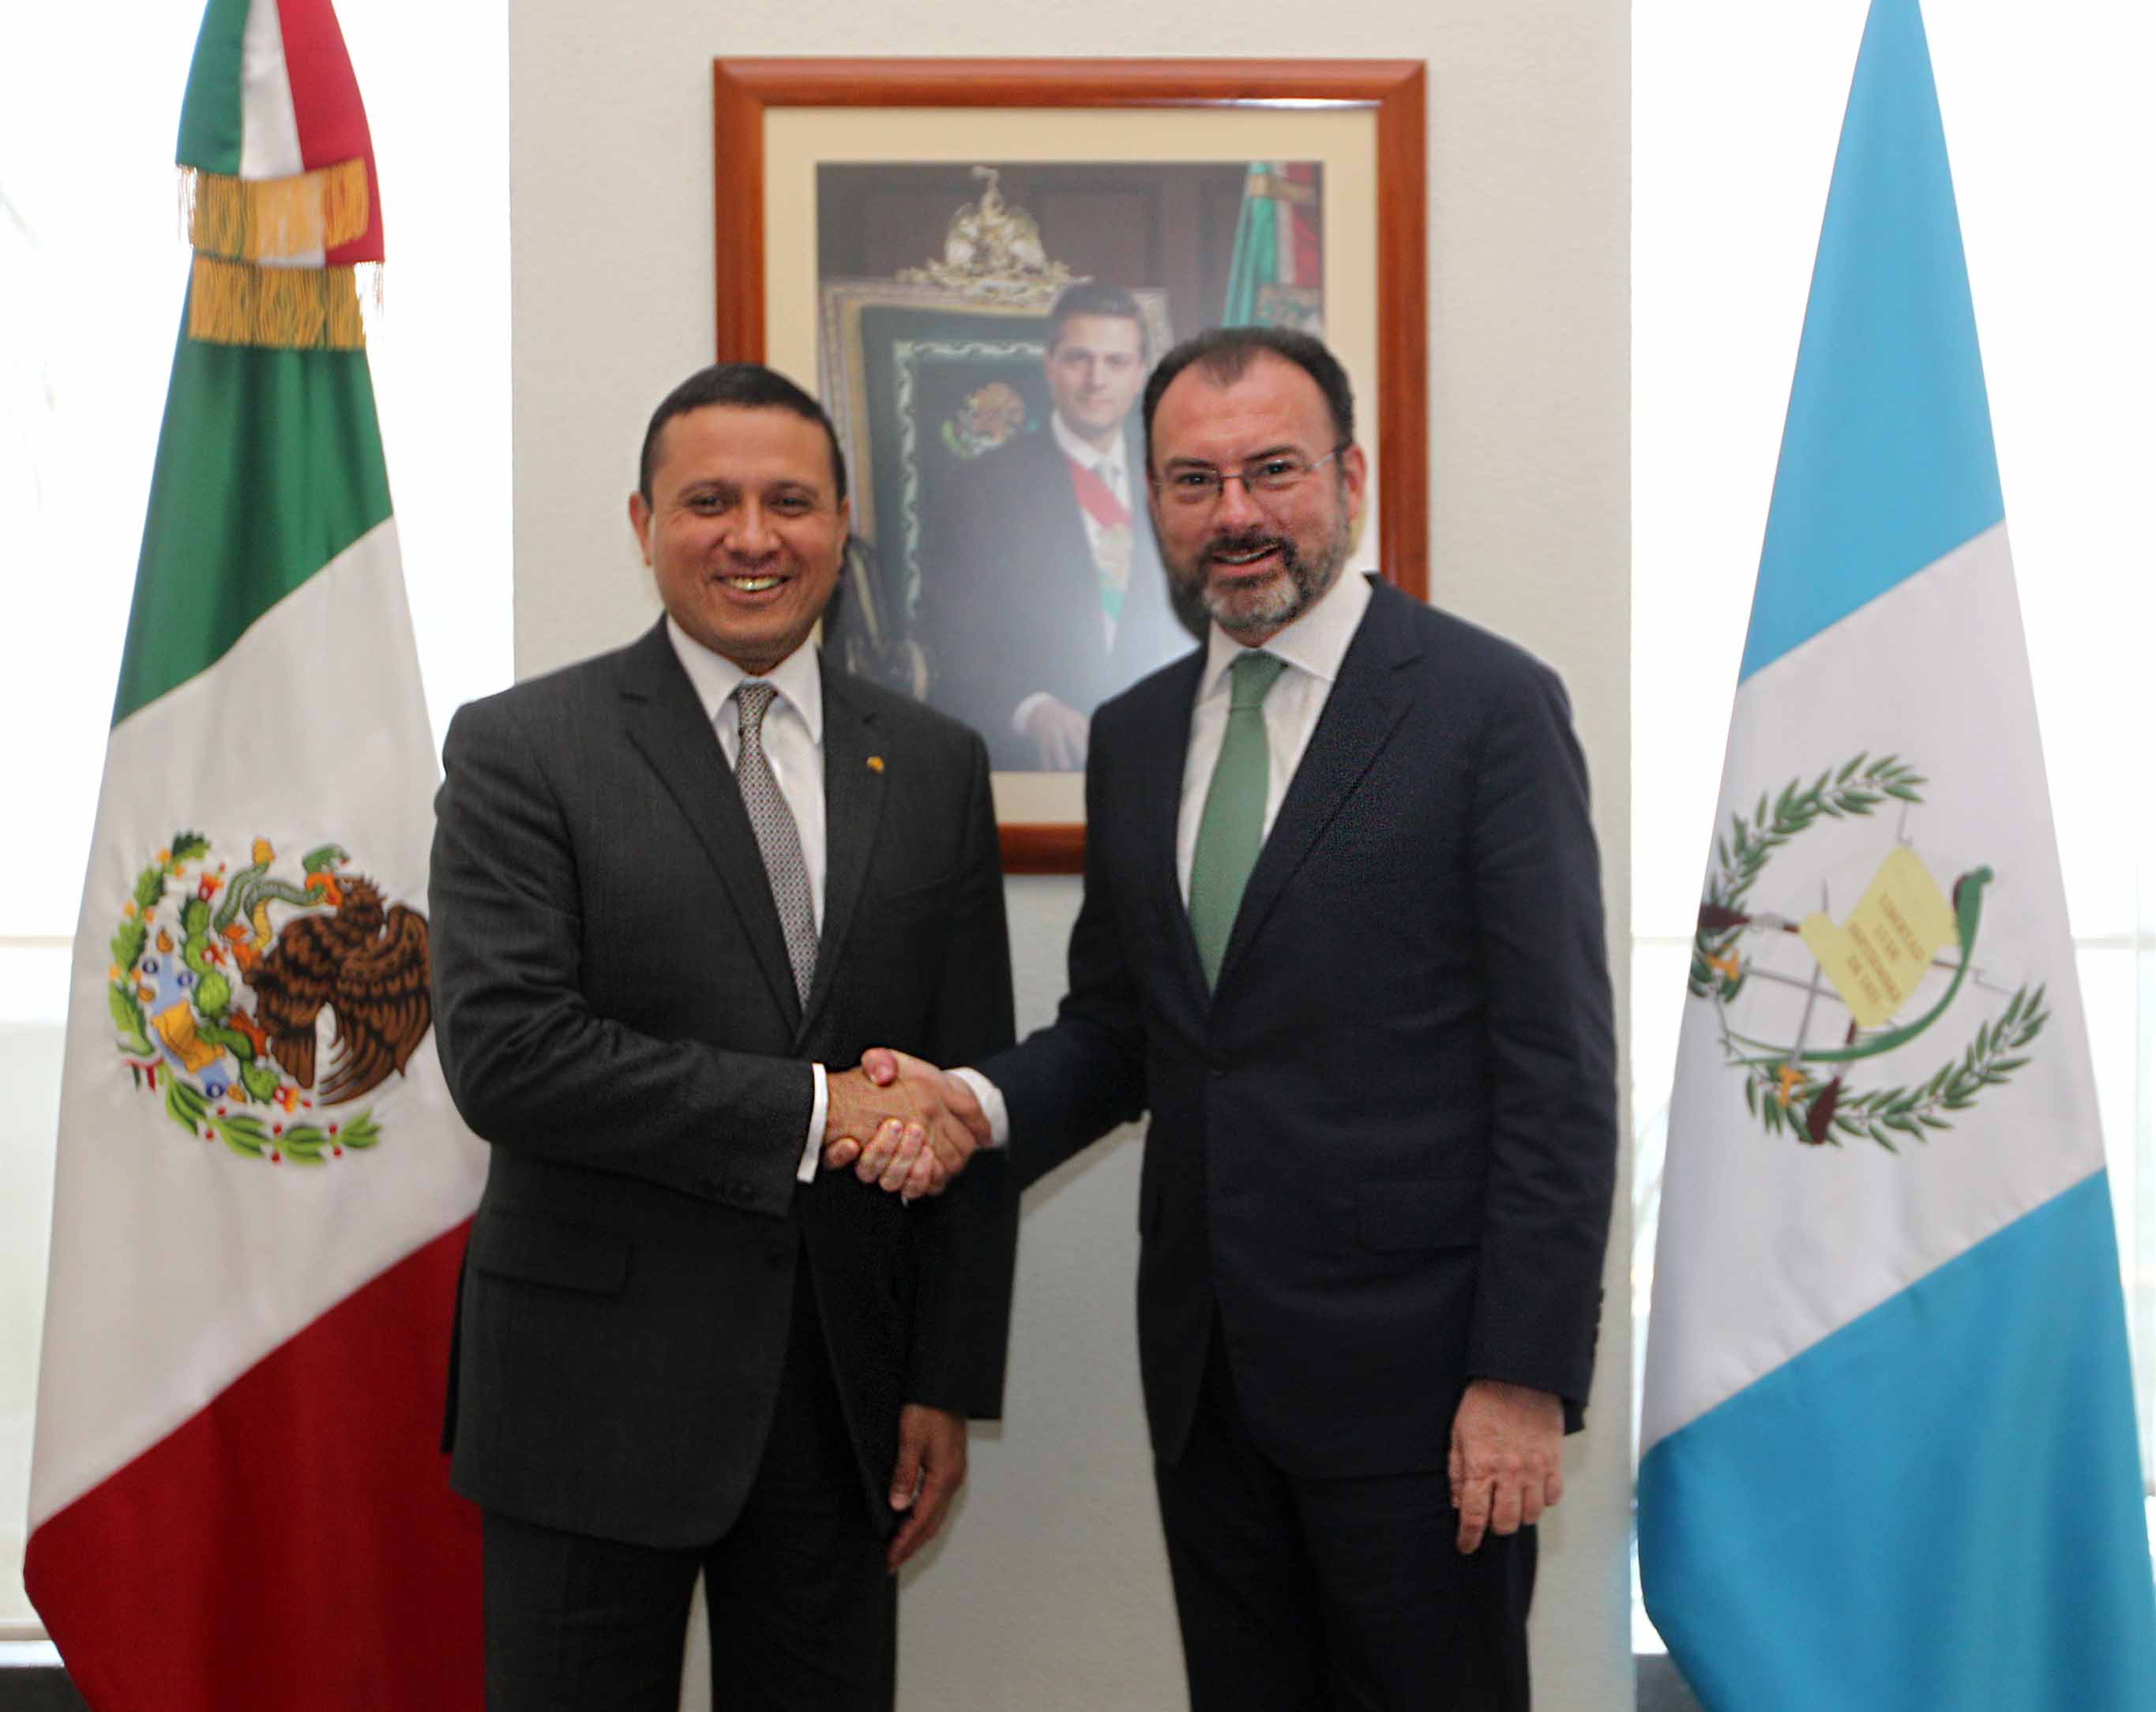 /cms/uploads/image/file/250210/FOTO_1__Encuentro_bilateral_Canciller_Luis_Videgaray_con_Carlos_Raul_Morales_Moscoso_Ministro_de_Relaciones_Exteriores_de_Guatemala.JPG